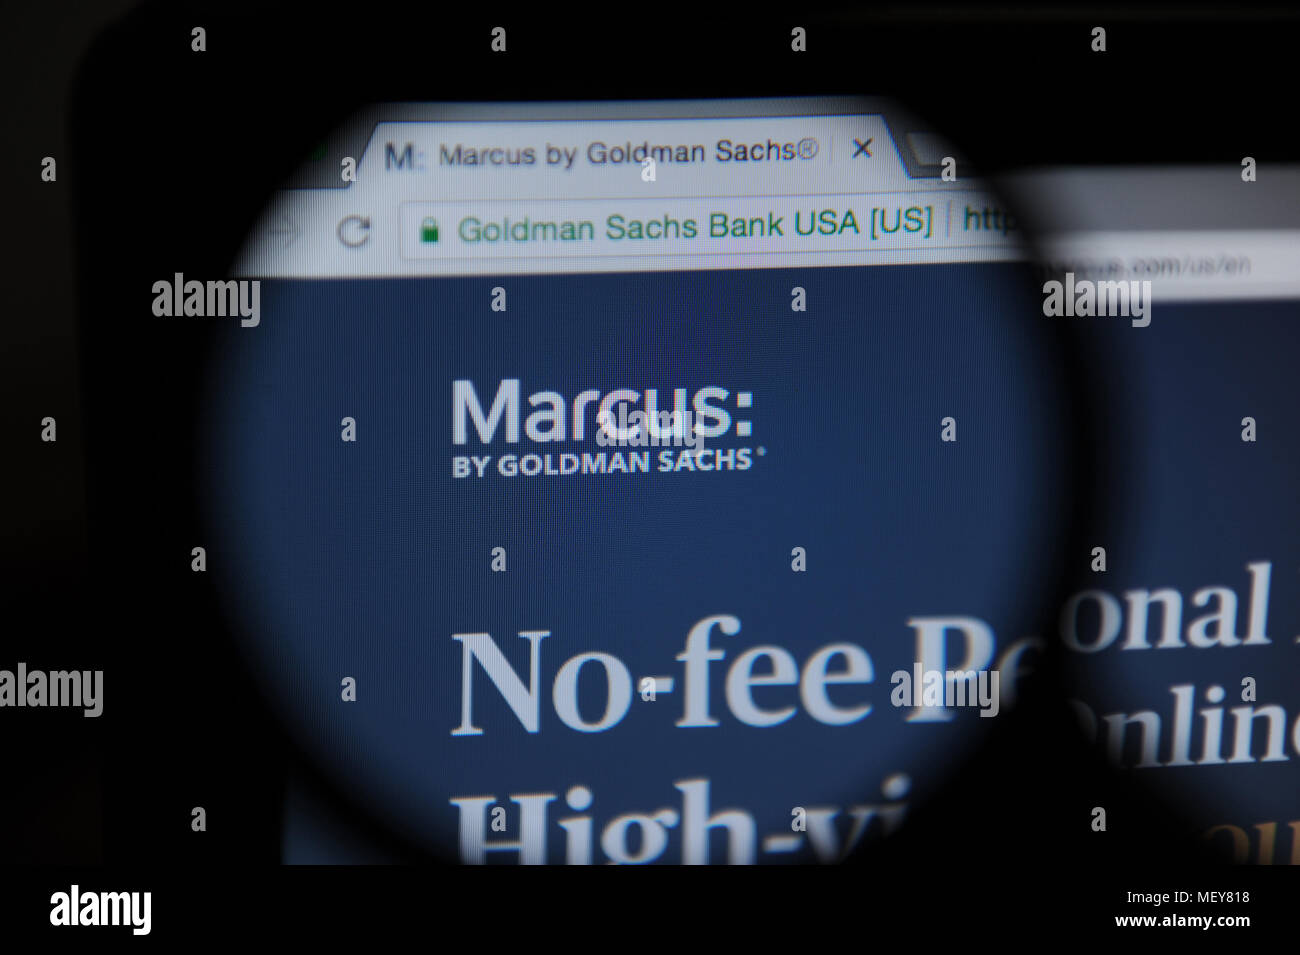 Marcus par Goldman Sachs site vu à travers une loupe Banque D'Images